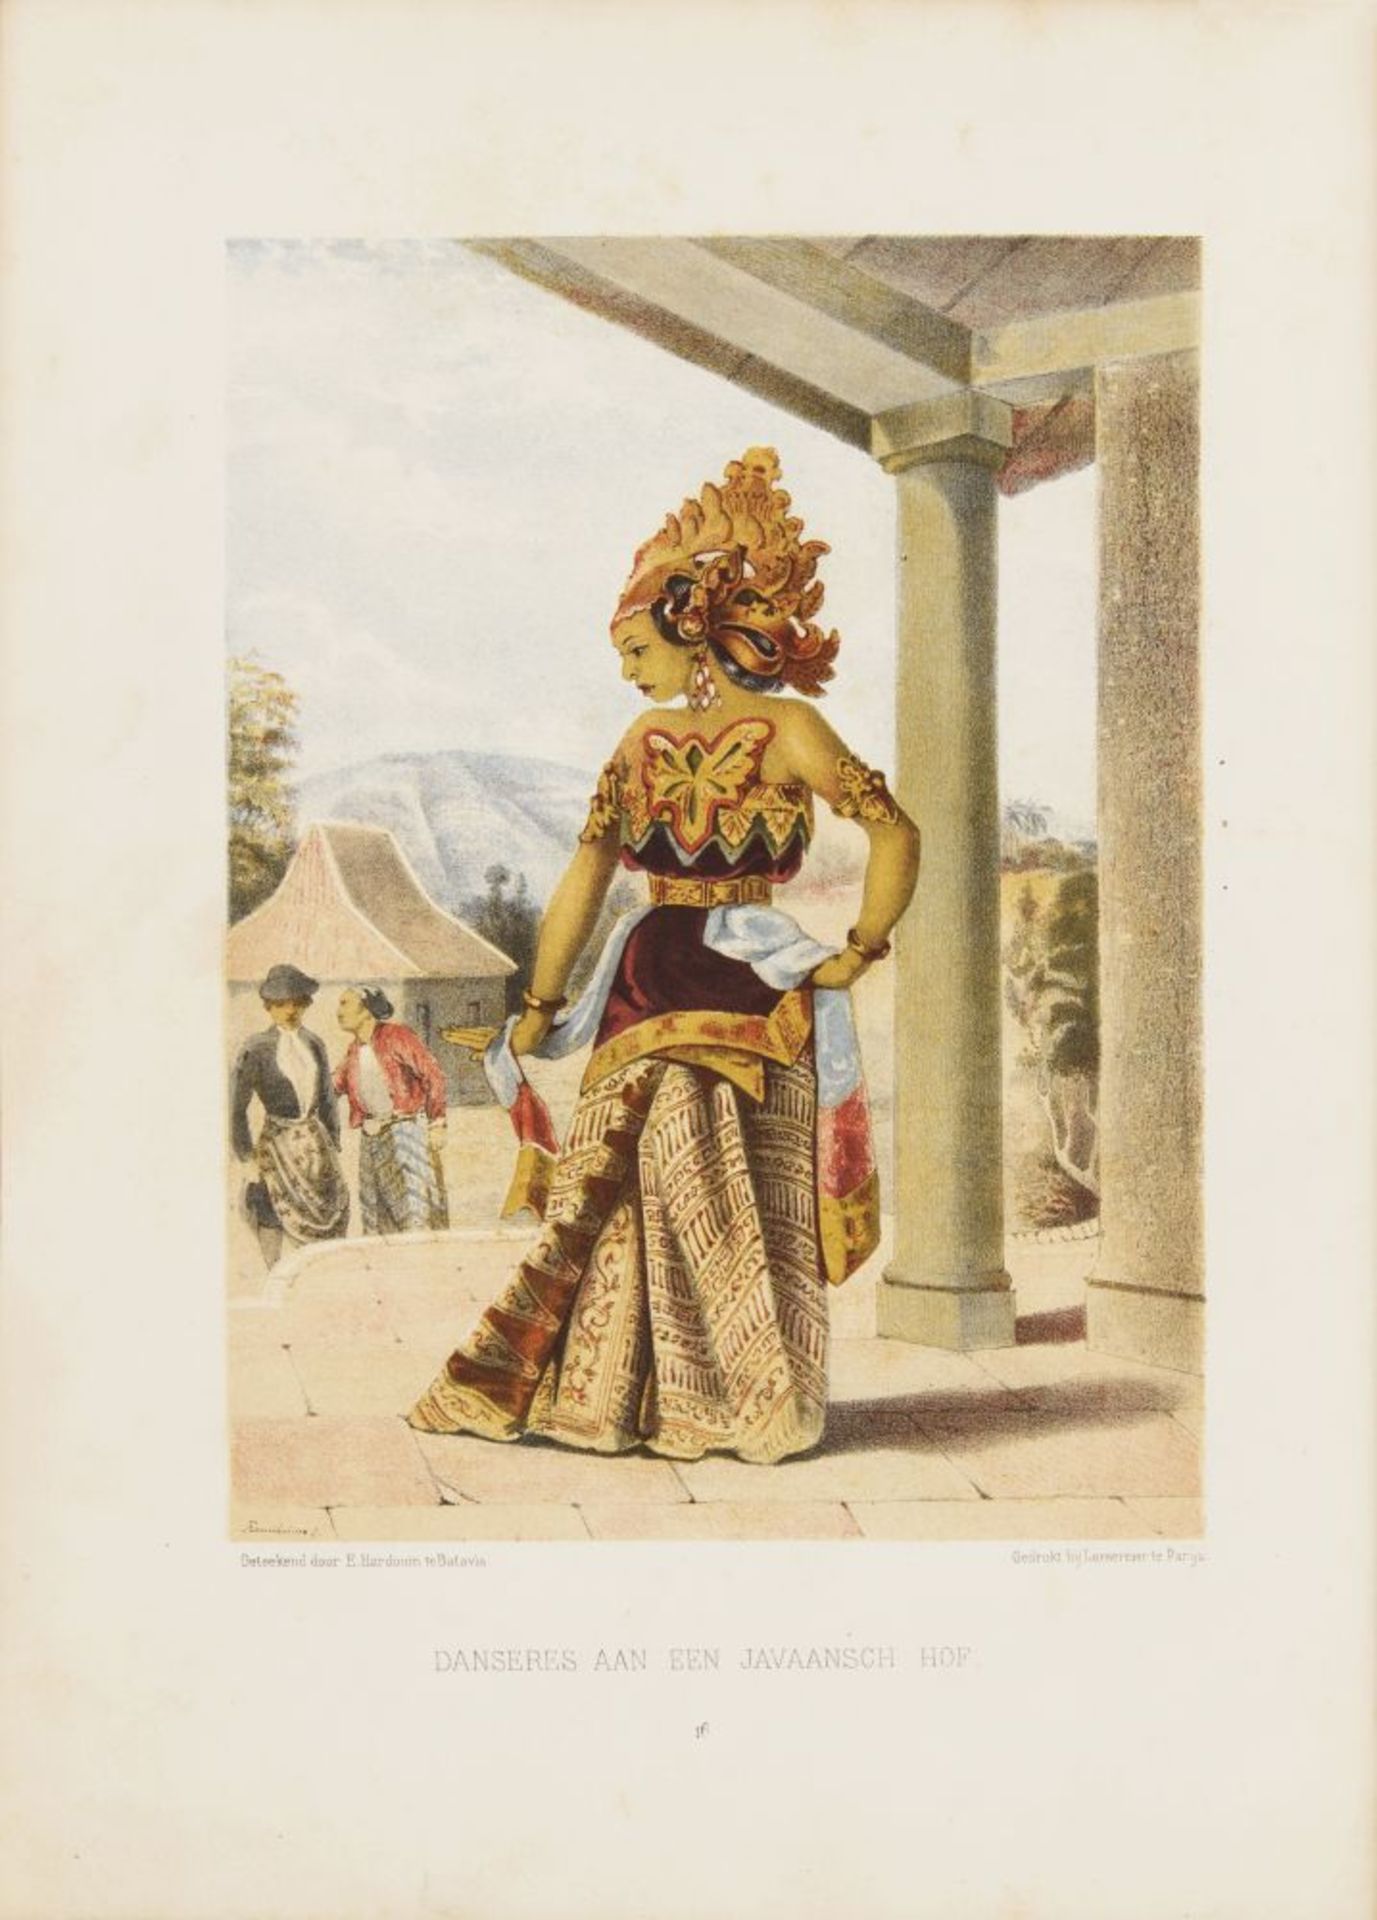 W. L. Ritter, Java's bewoners. Leiden 1872.